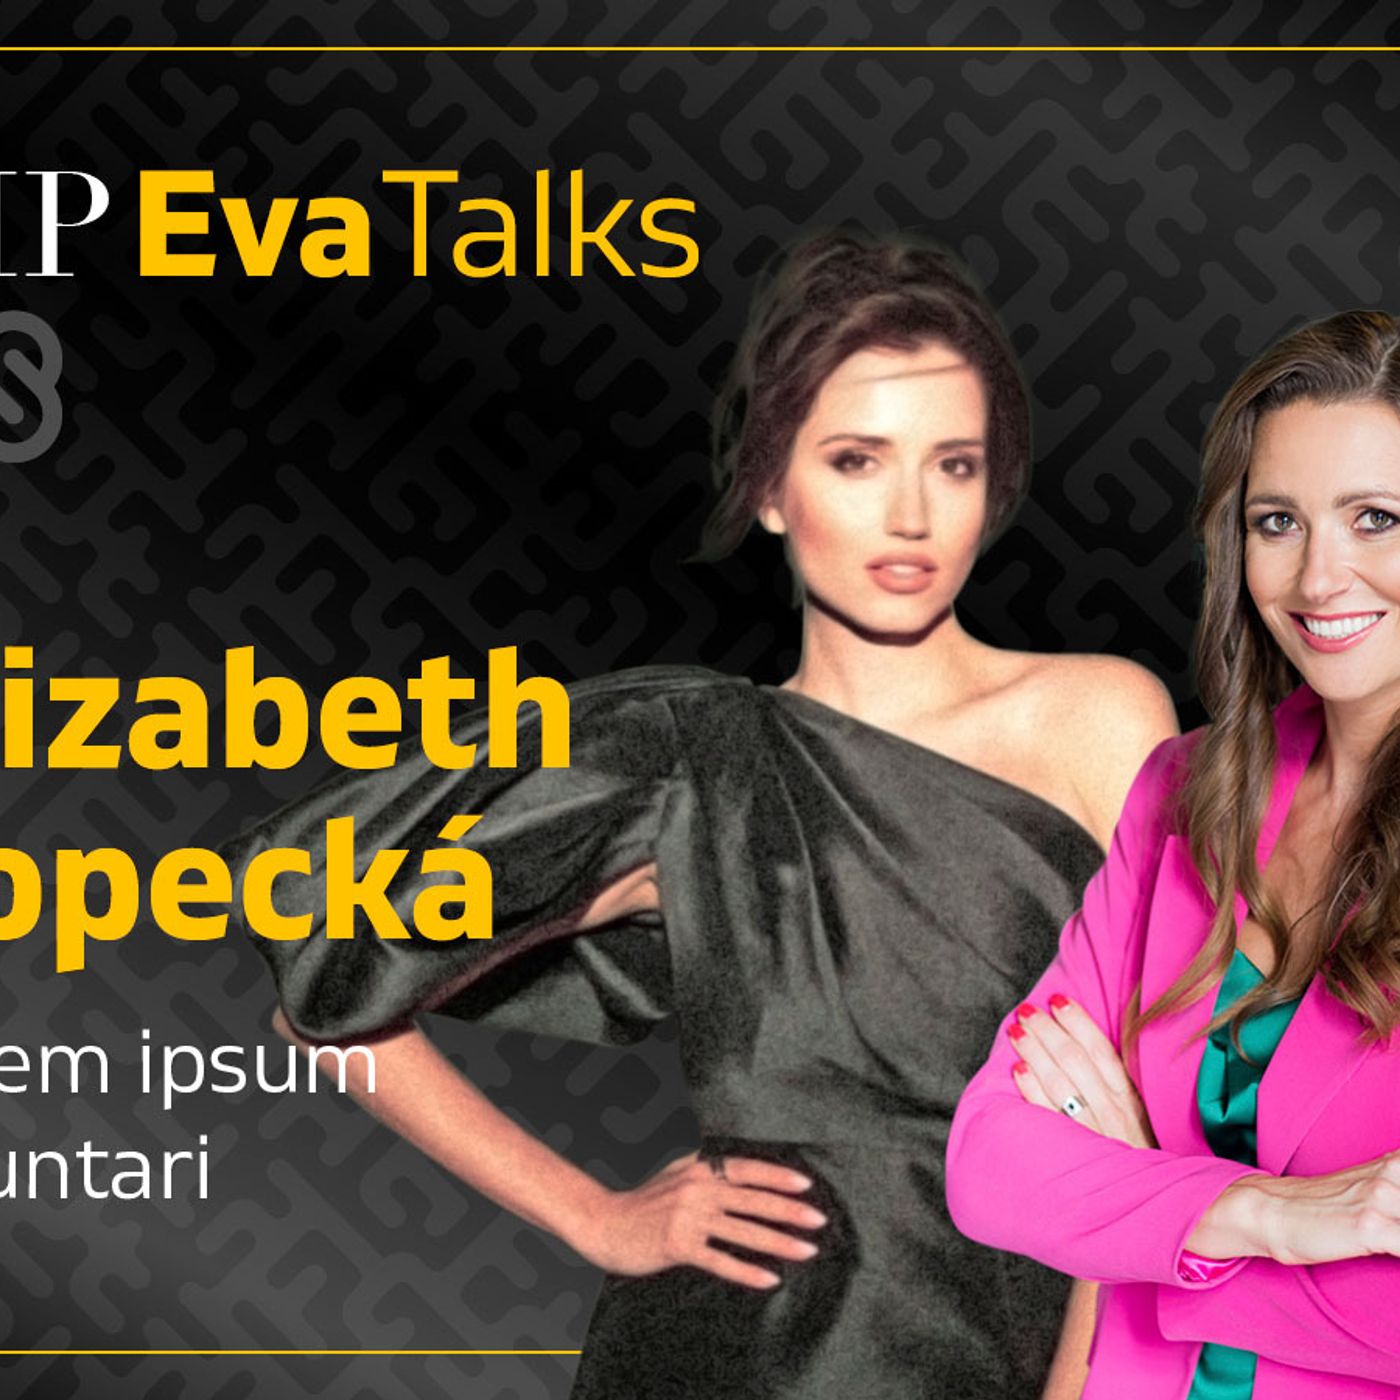 Plán B  je nejintimnější, co jsem kdy zazpívala, říká Elizabeth Kopecká - VIP Eva Talks